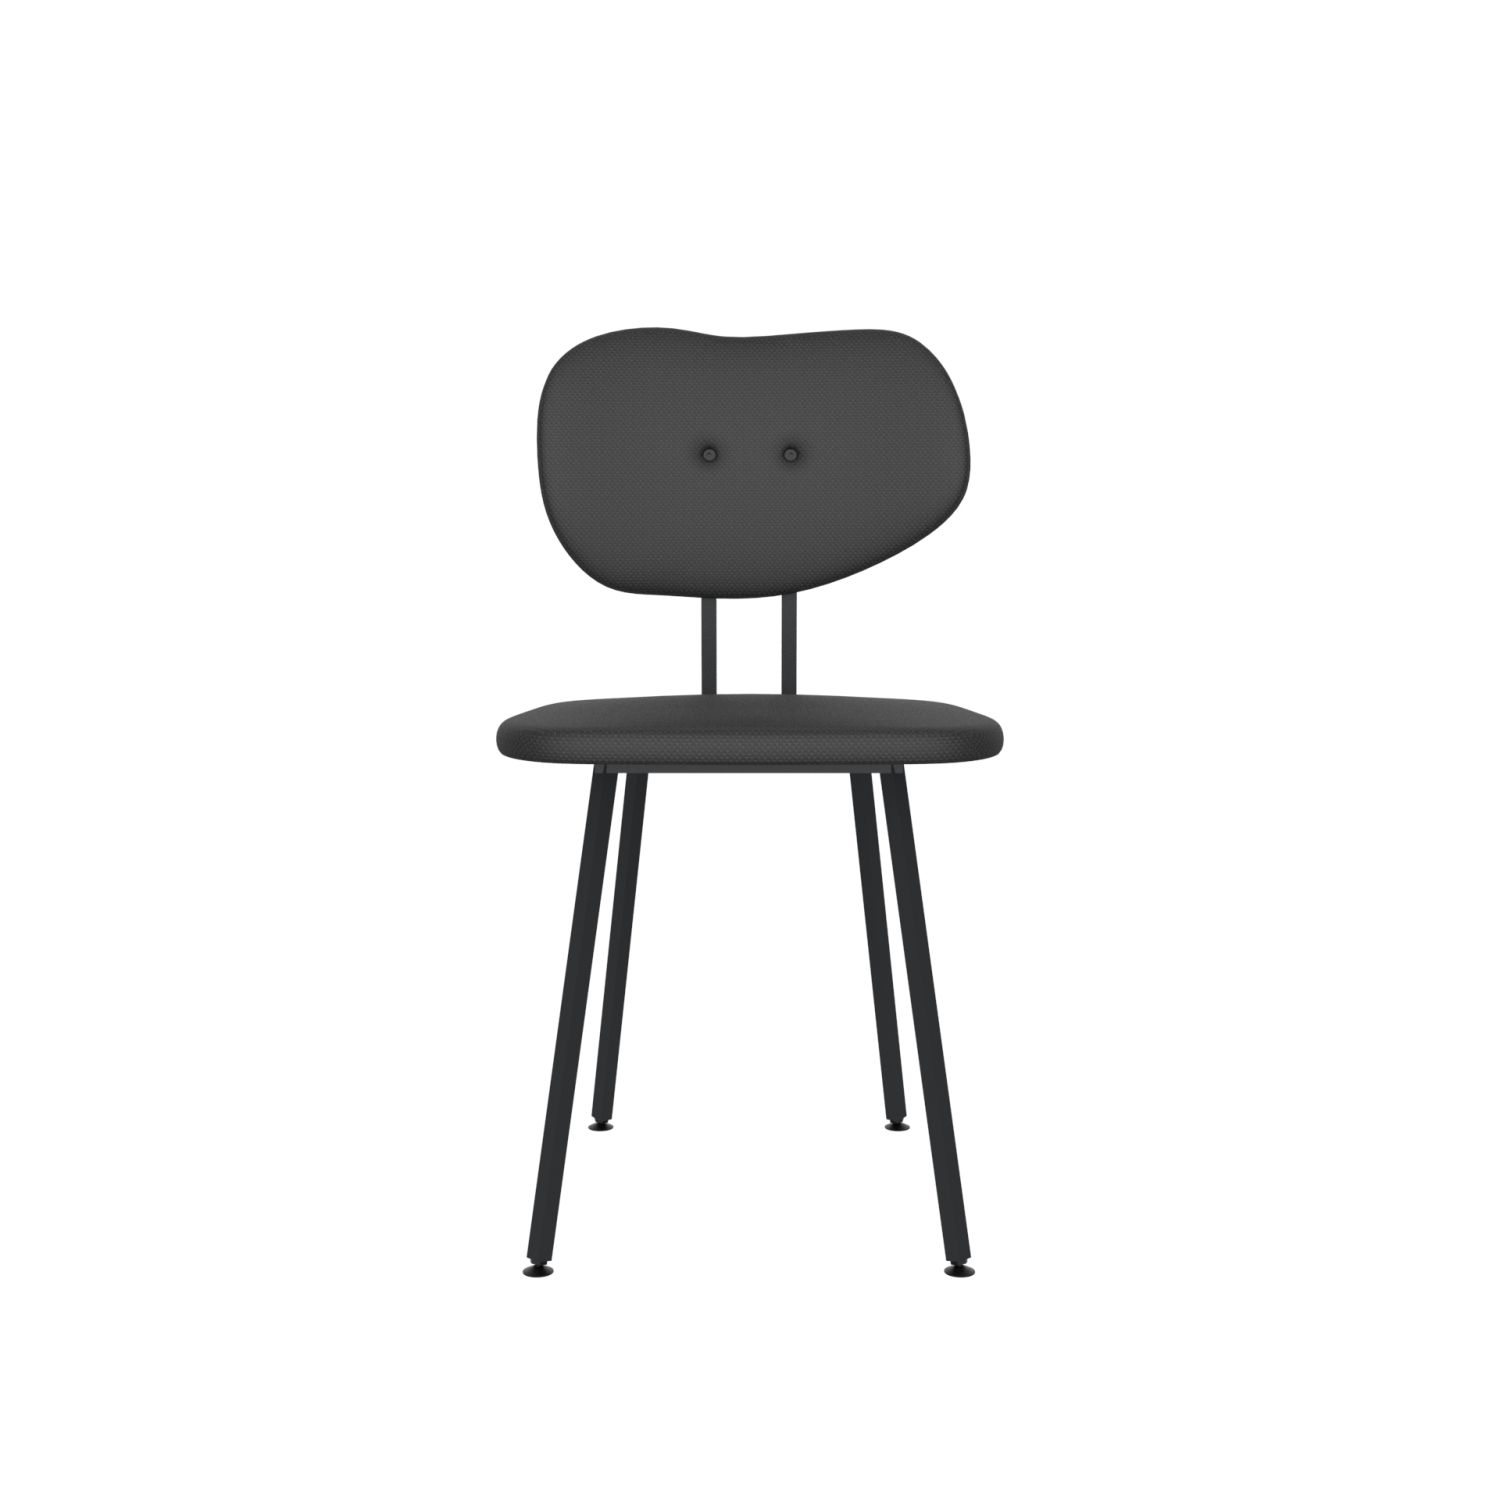 lensvelt maarten baas chair 101 not stackable without armrests backrest b havana black 090 black ral9005 hard leg ends